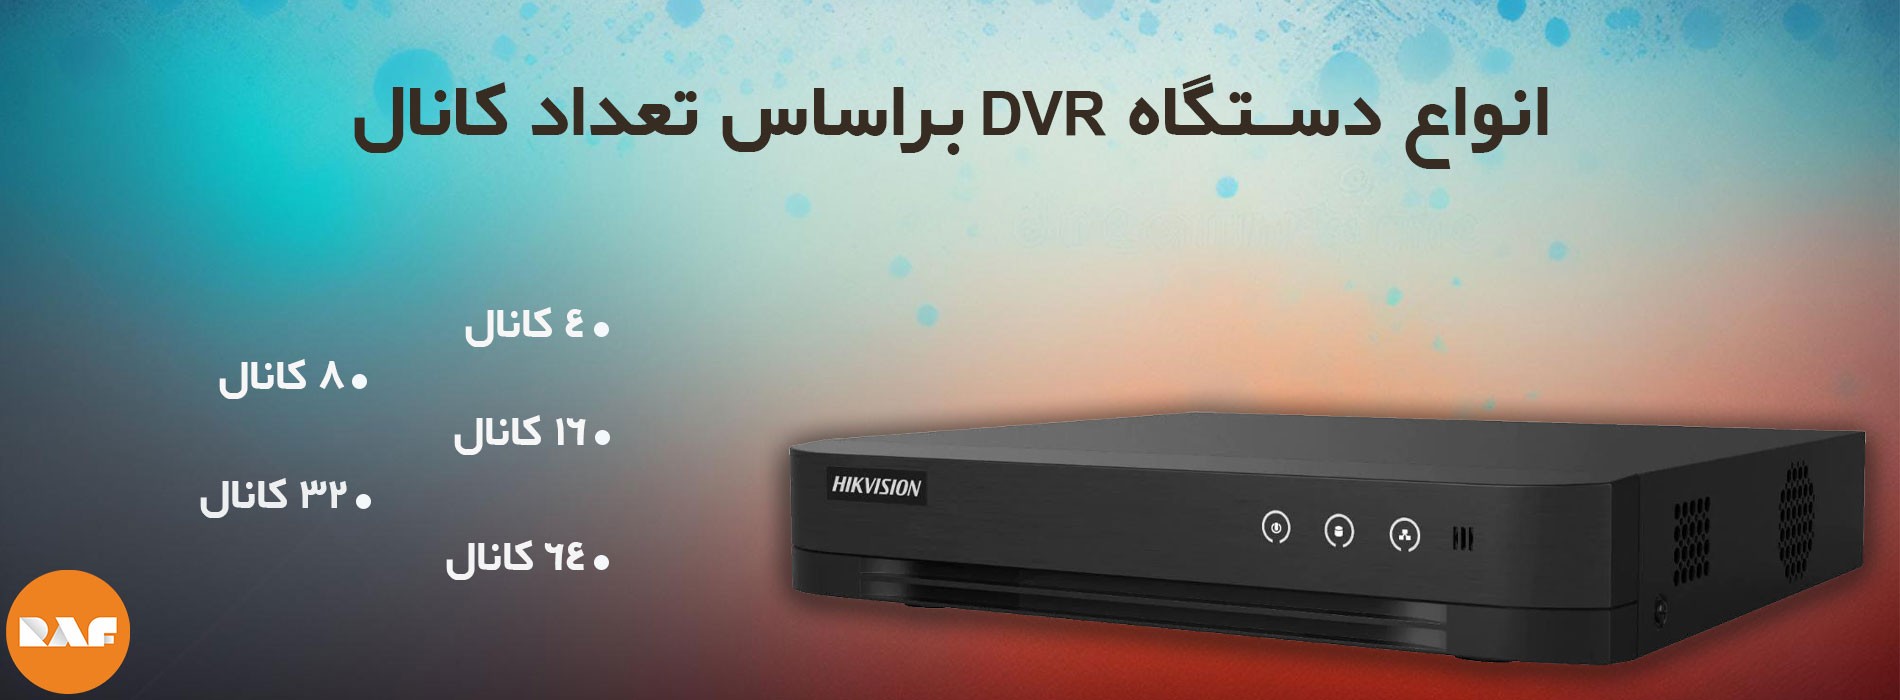 انواع دستگاه DVR براساس تعداد کانال